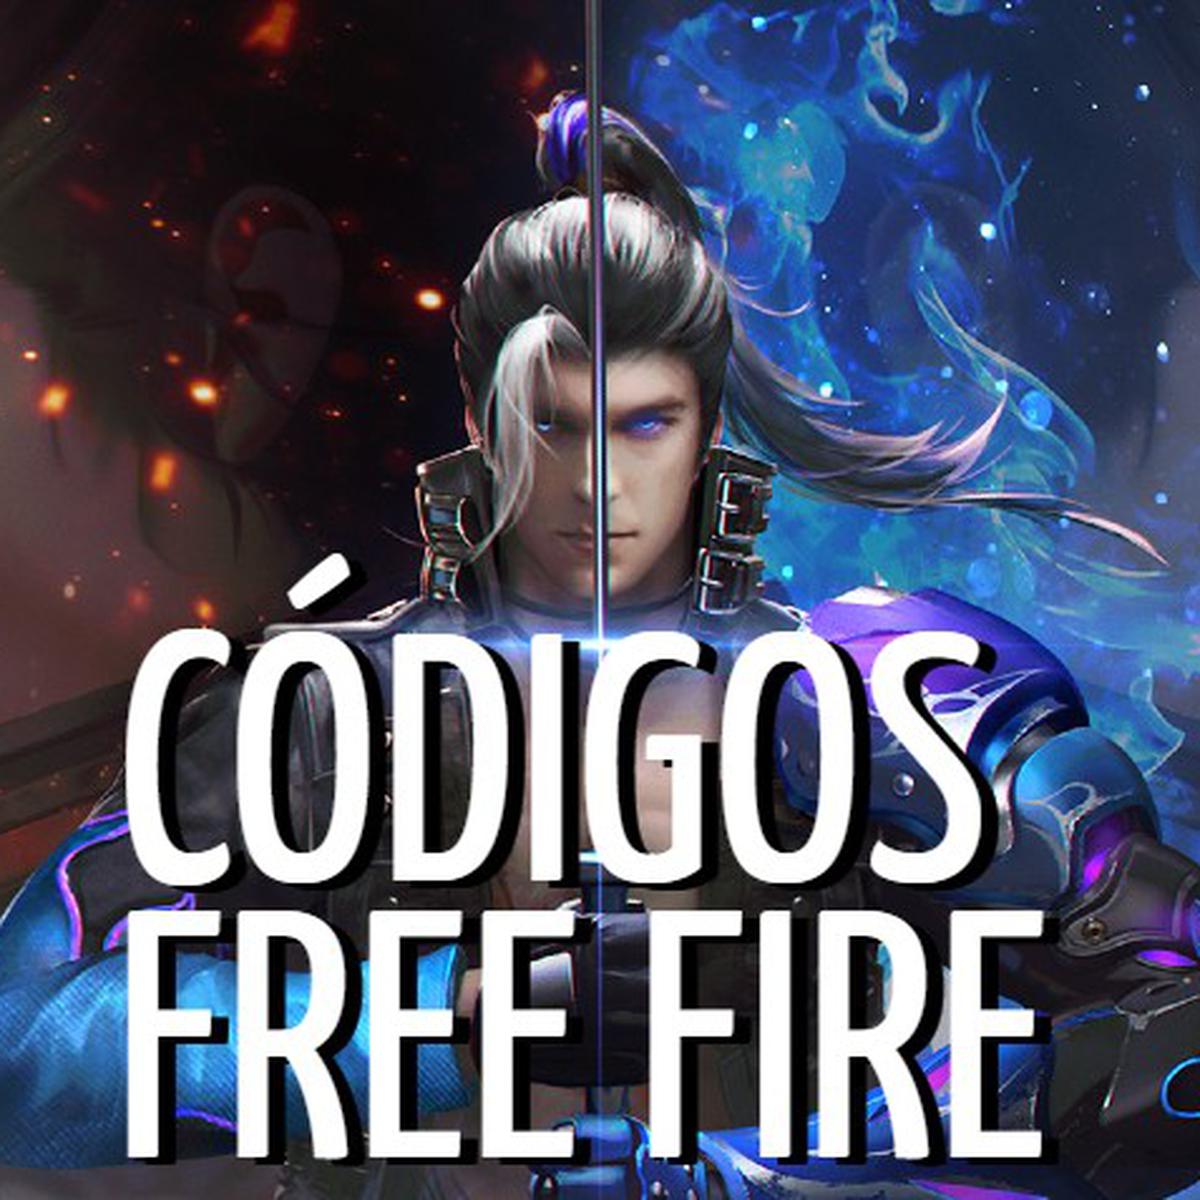 FREE FIRE  Códigos de hoy miércoles 16 de agosto de 2023 - Recompensas  gratis - Diario del Sur